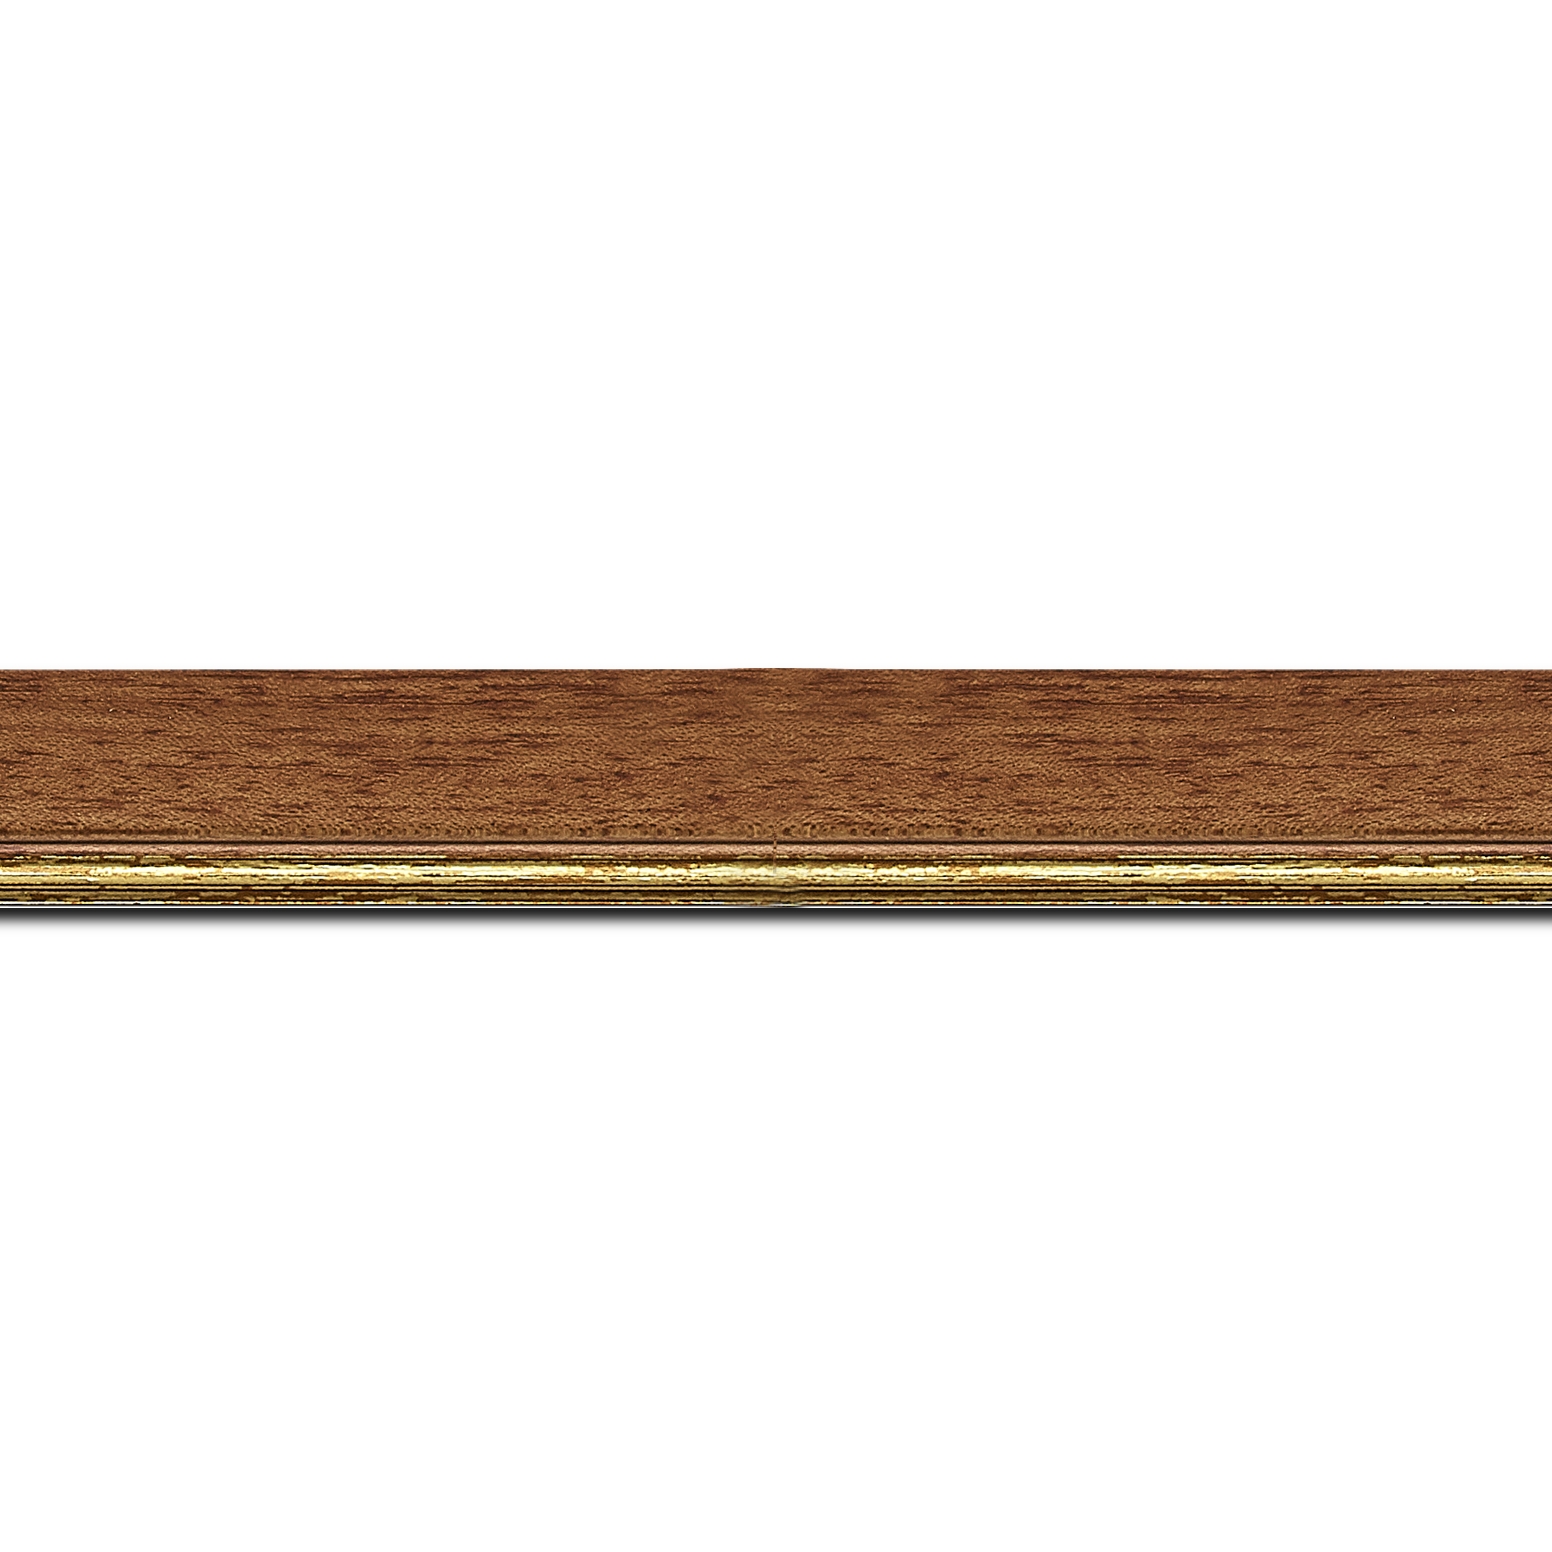 Pack par 12m, bois profil plat largeur 2.5cm couleur marron ton bois filet or (longueur baguette pouvant varier entre 2.40m et 3m selon arrivage des bois)